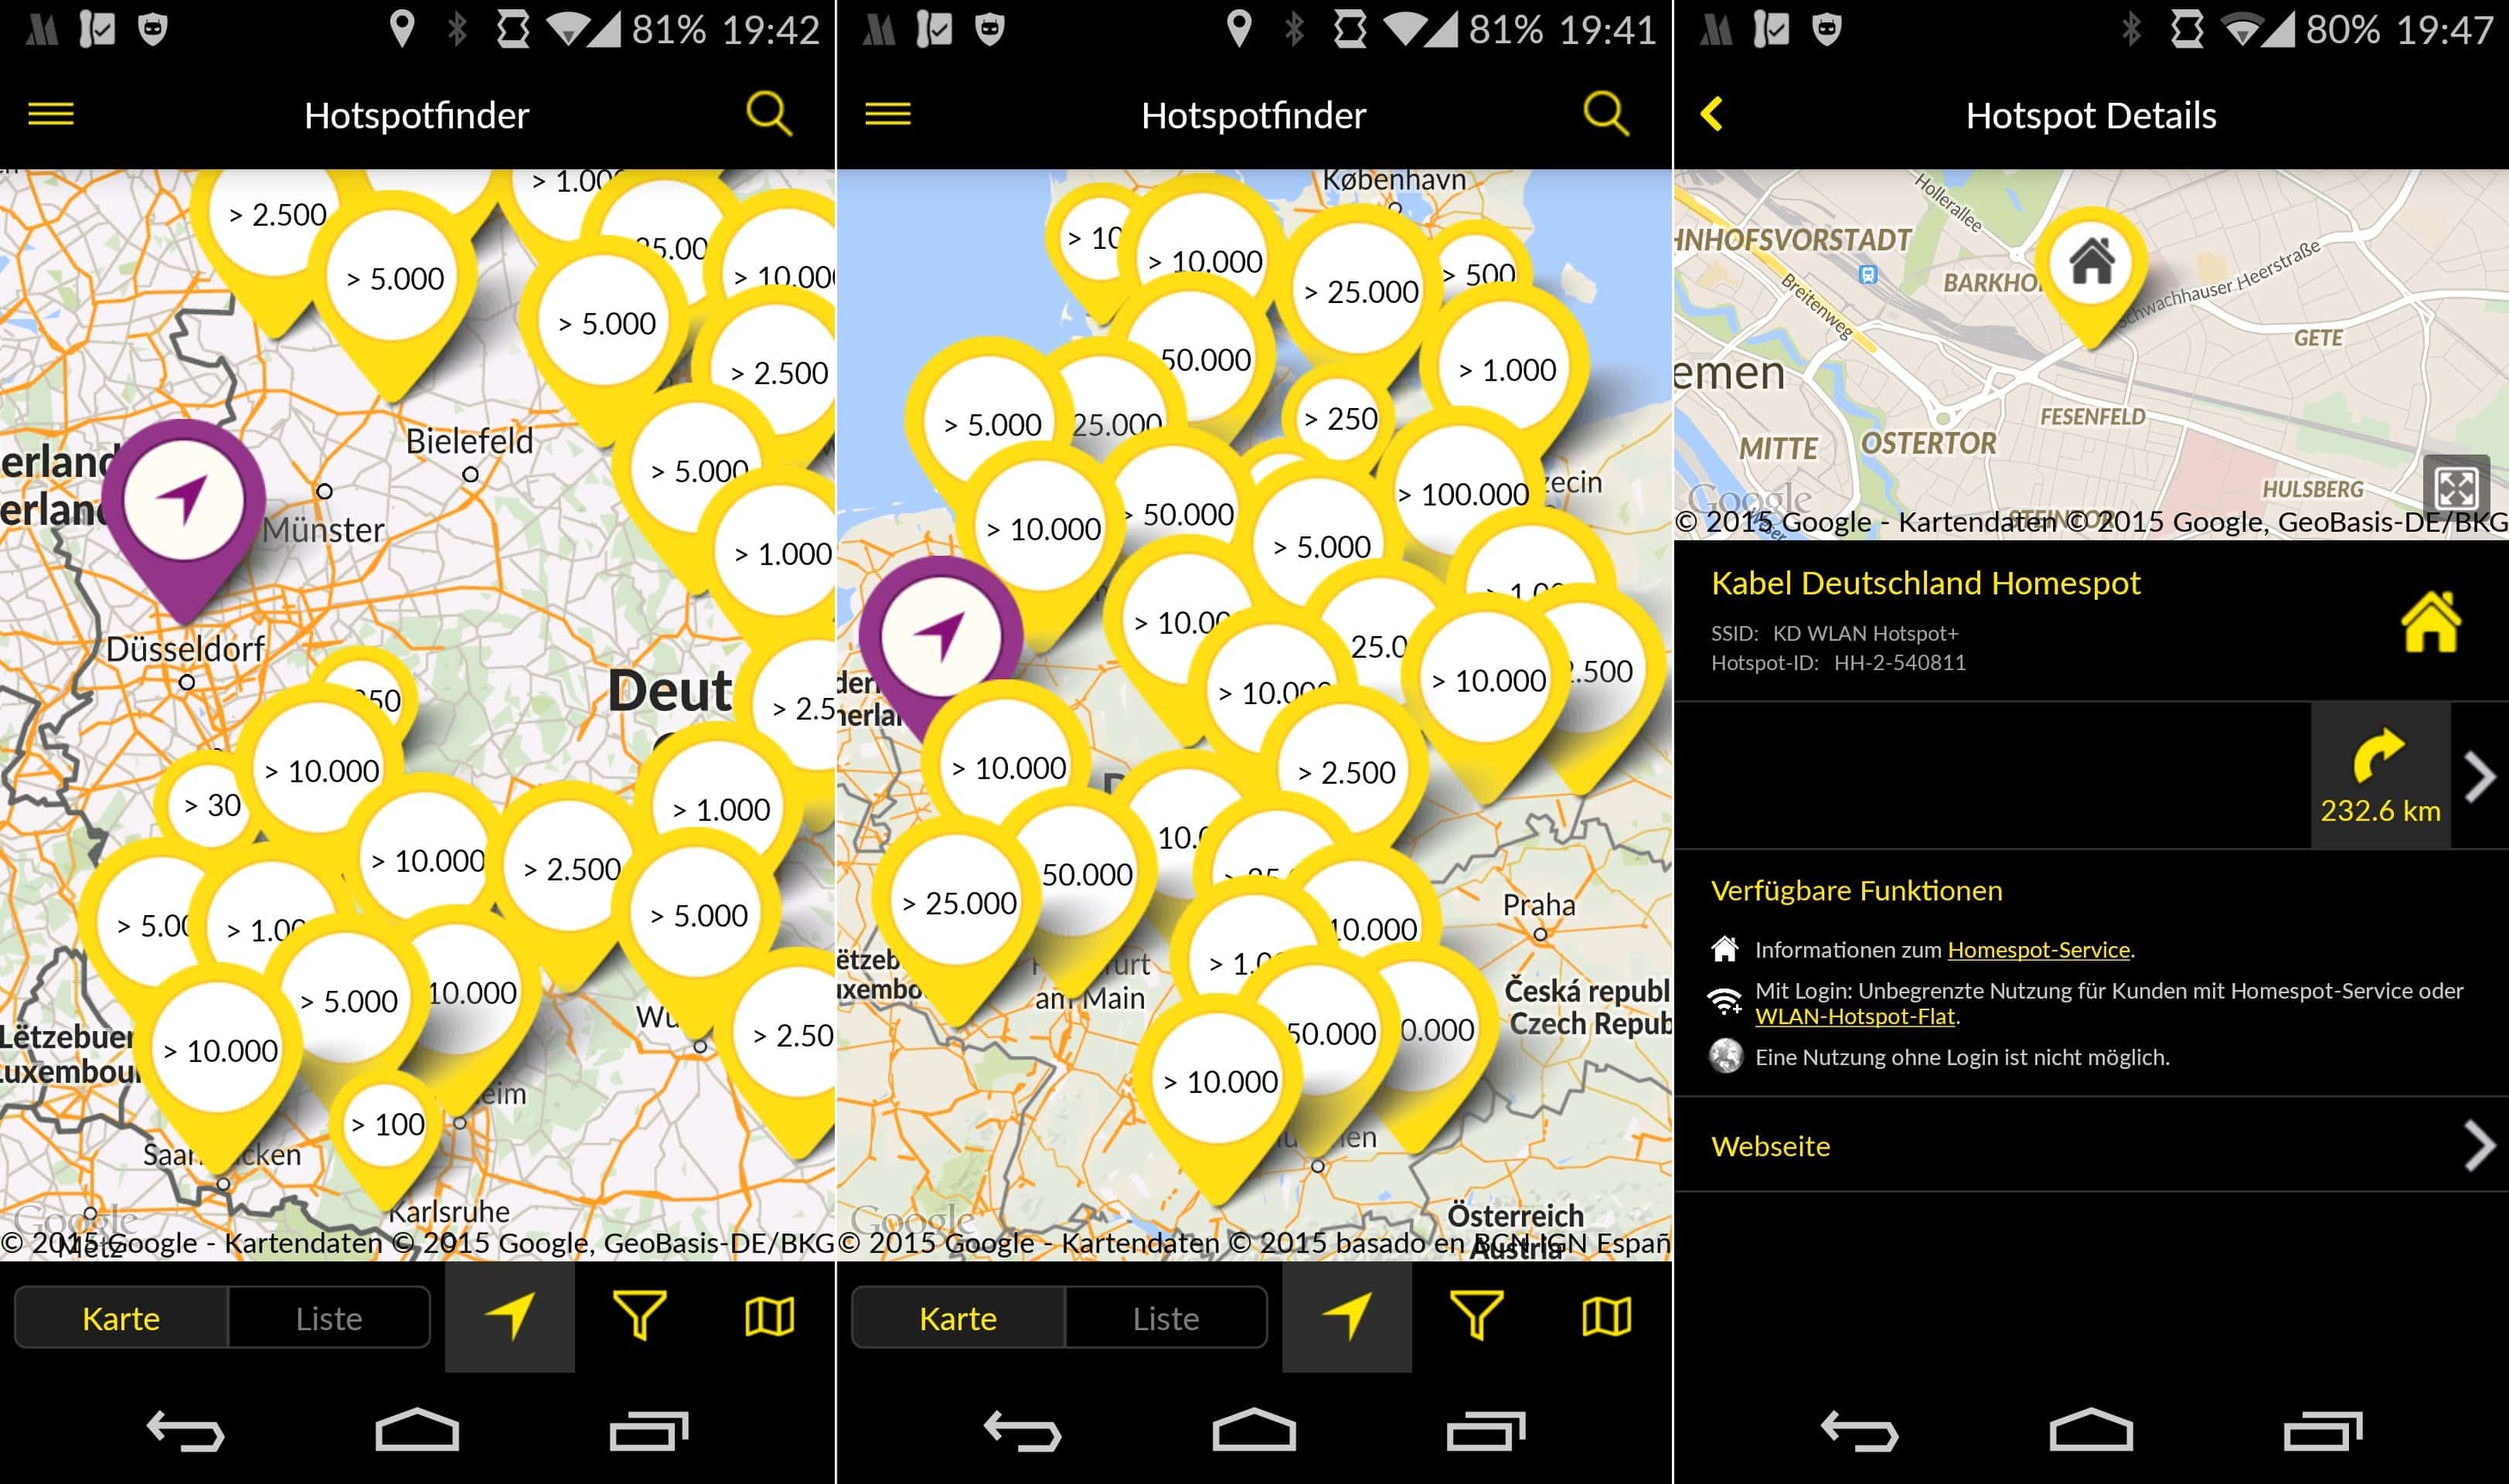 Kabel Deutschland - Android App - Hotspot Suche